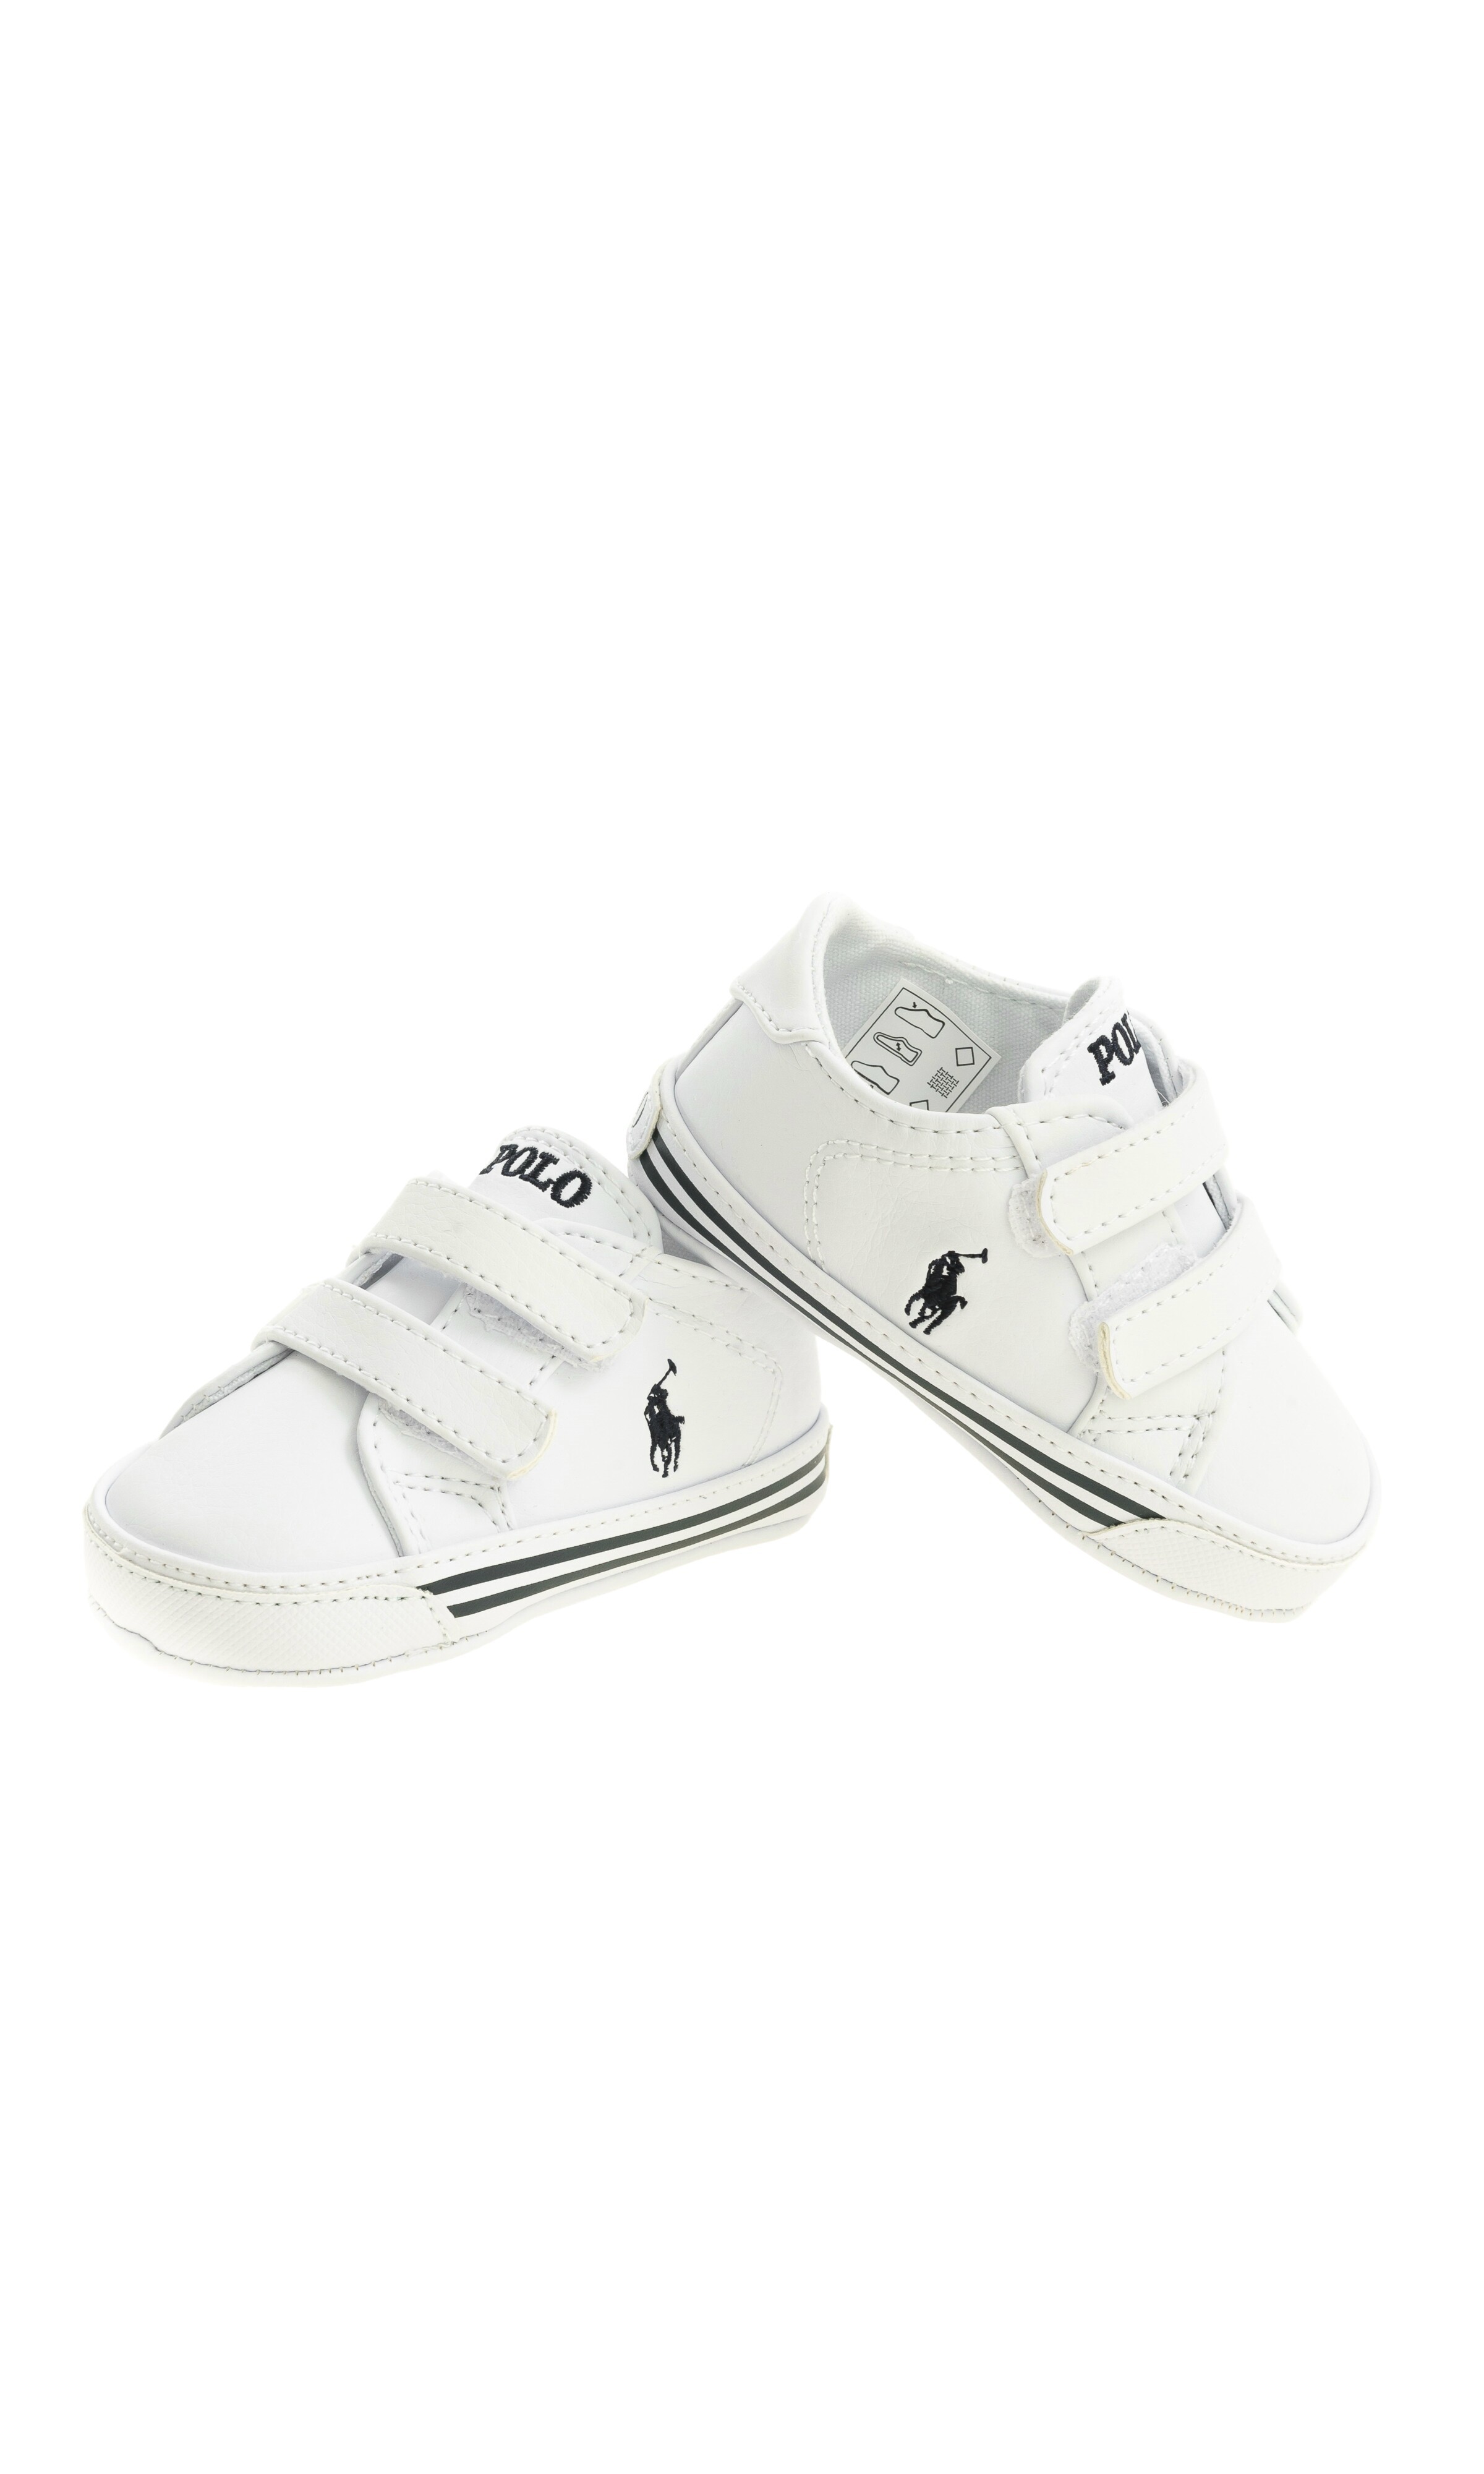 ralph lauren baby shoes